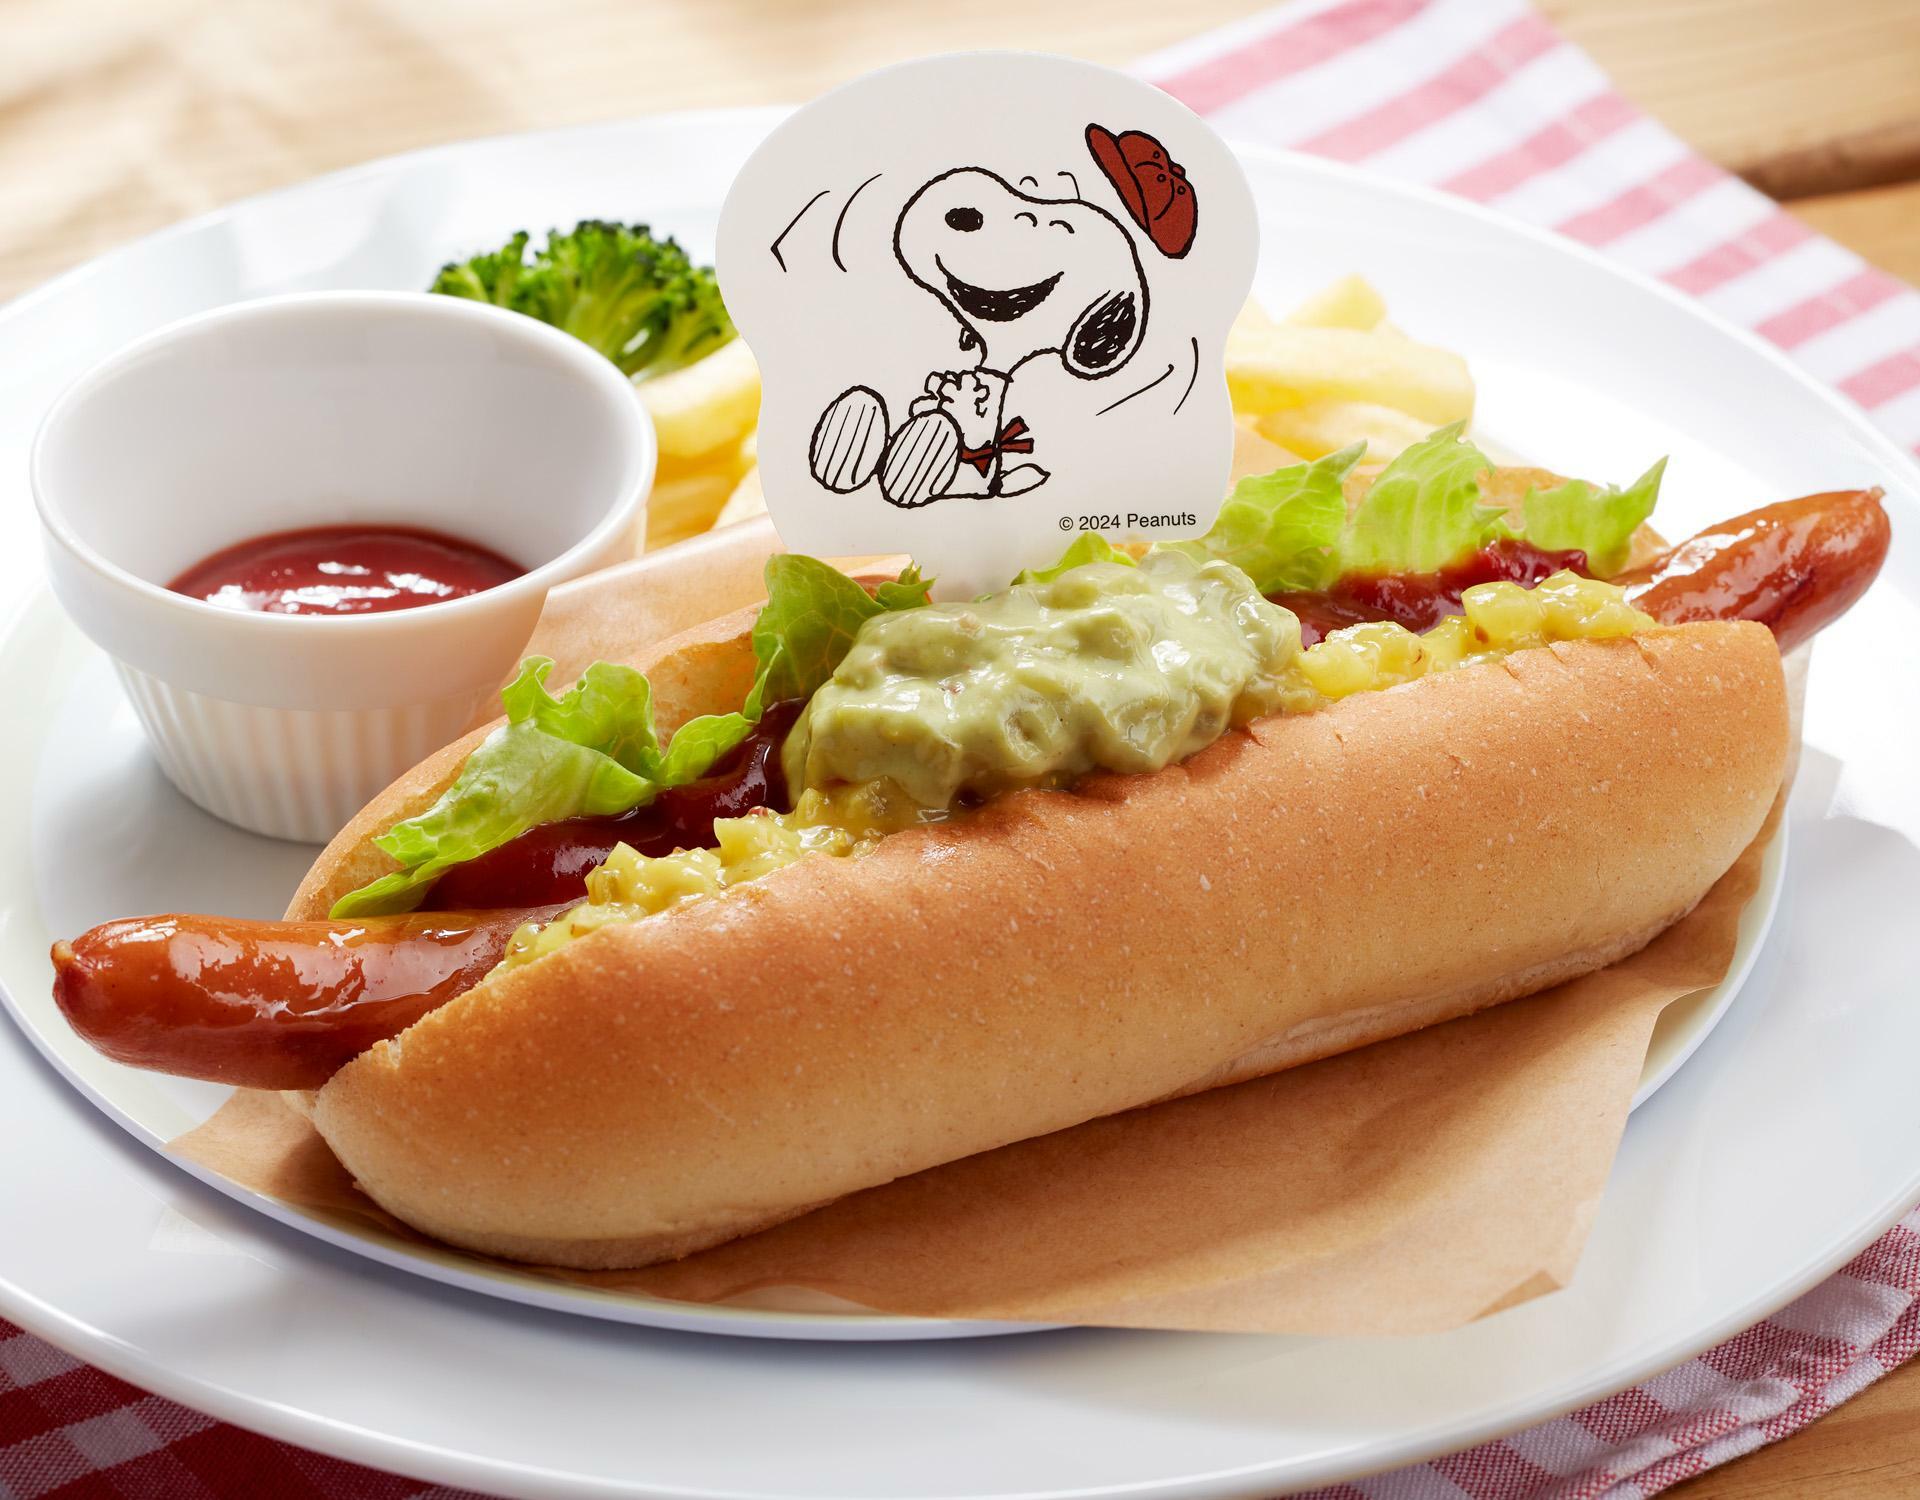 チャーリー・ブラウンの野球観戦しながら食べたい Hotdog／699円（税込：768円）*TAKE OUT 可